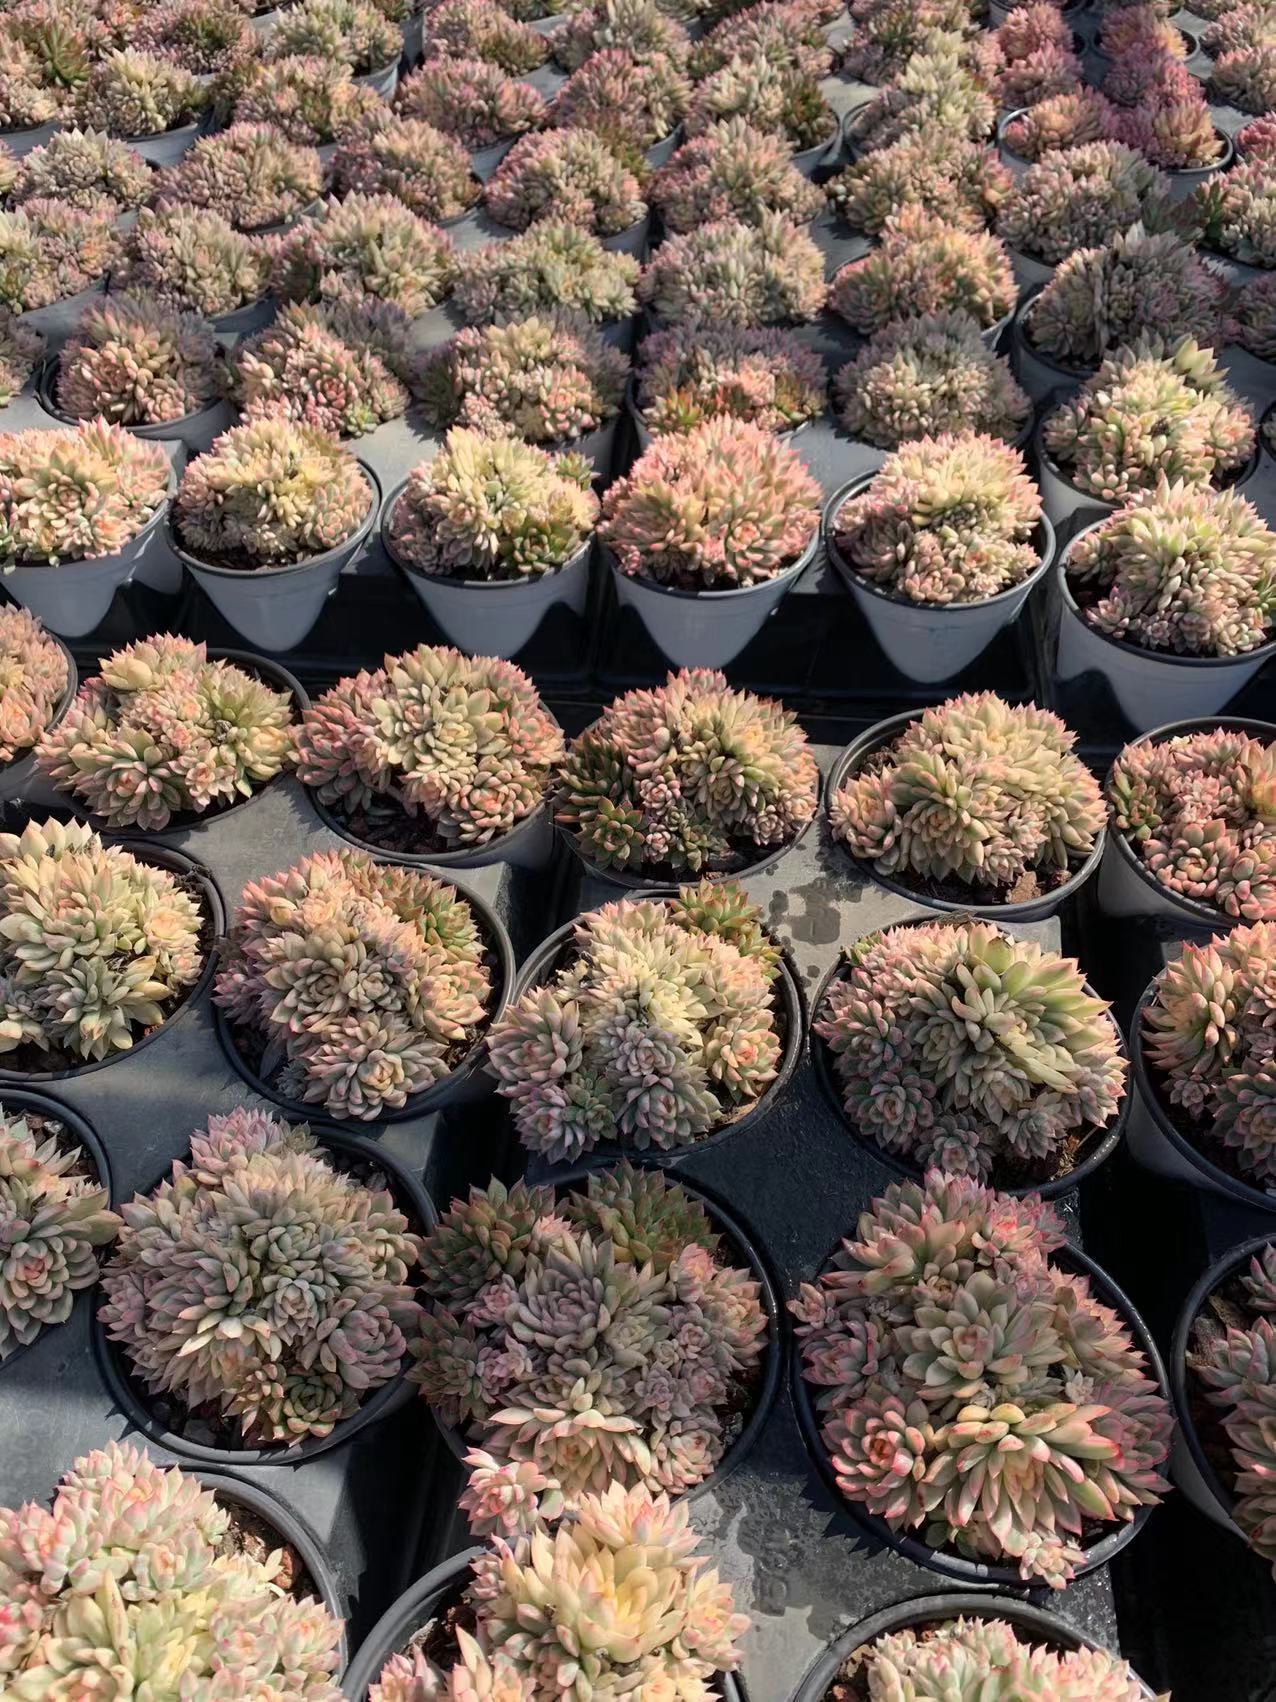 Mebina(Pot size 14cm)/Echeveria/Variegated Natural Live Plants Succulents